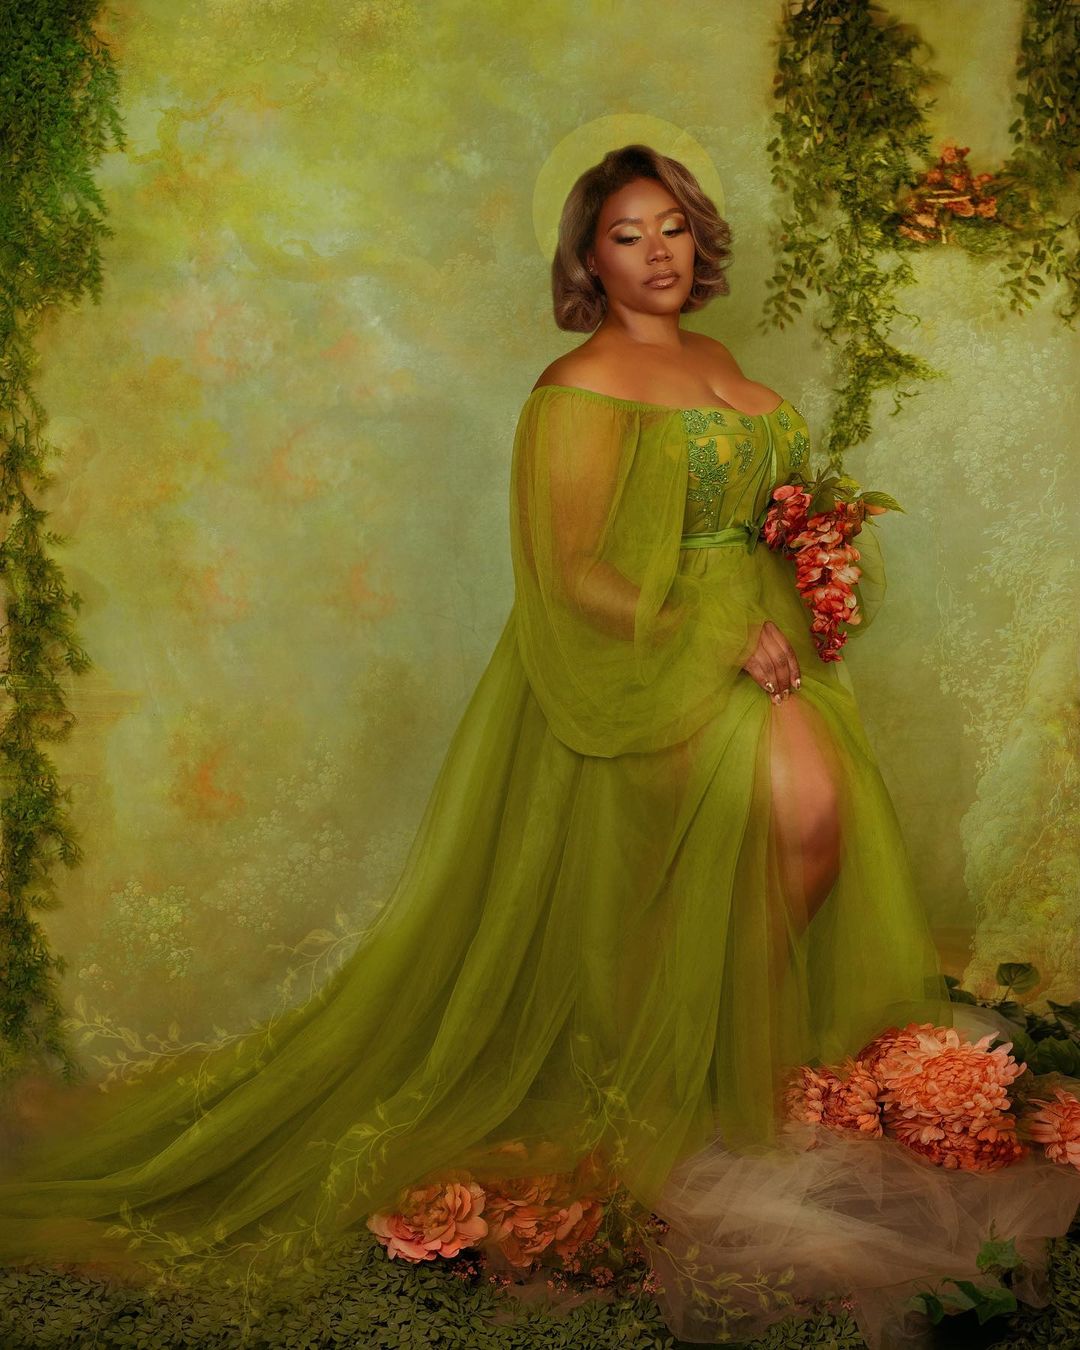 Kate art fleurs couleur verte toile de fond abstraite pour la photographie conçue par Jerry_Sina